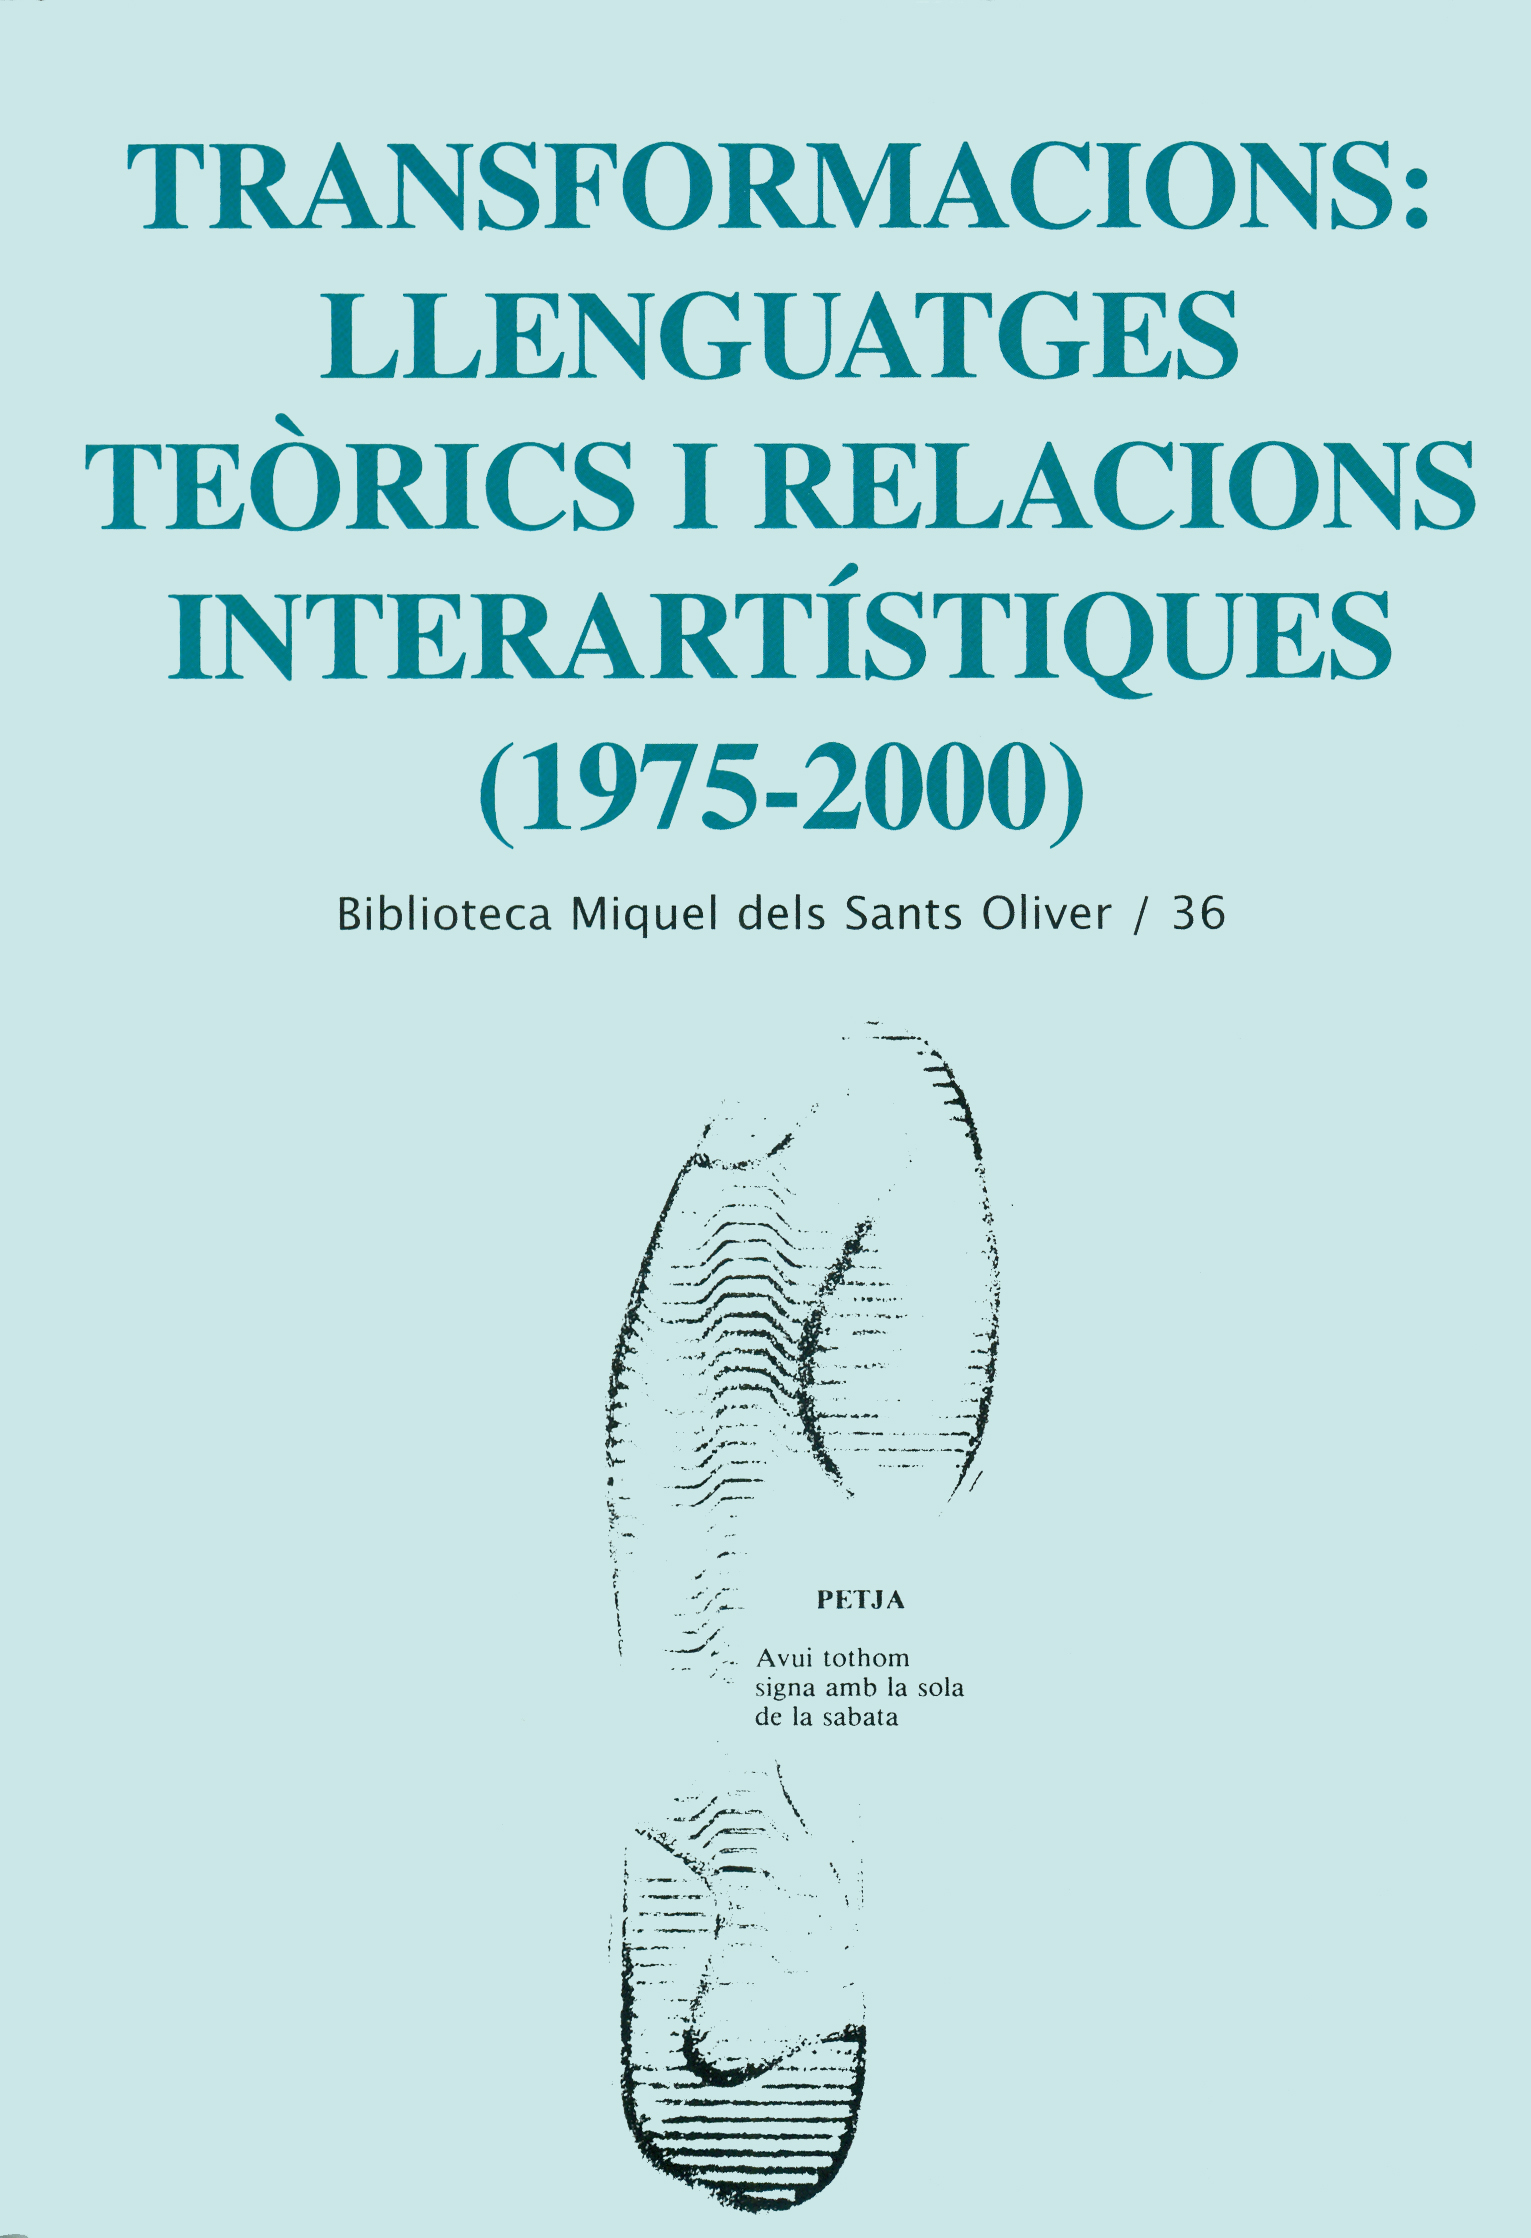 Transformacions: llenguatges teòrics i relacions interartístiques (1975-2000)